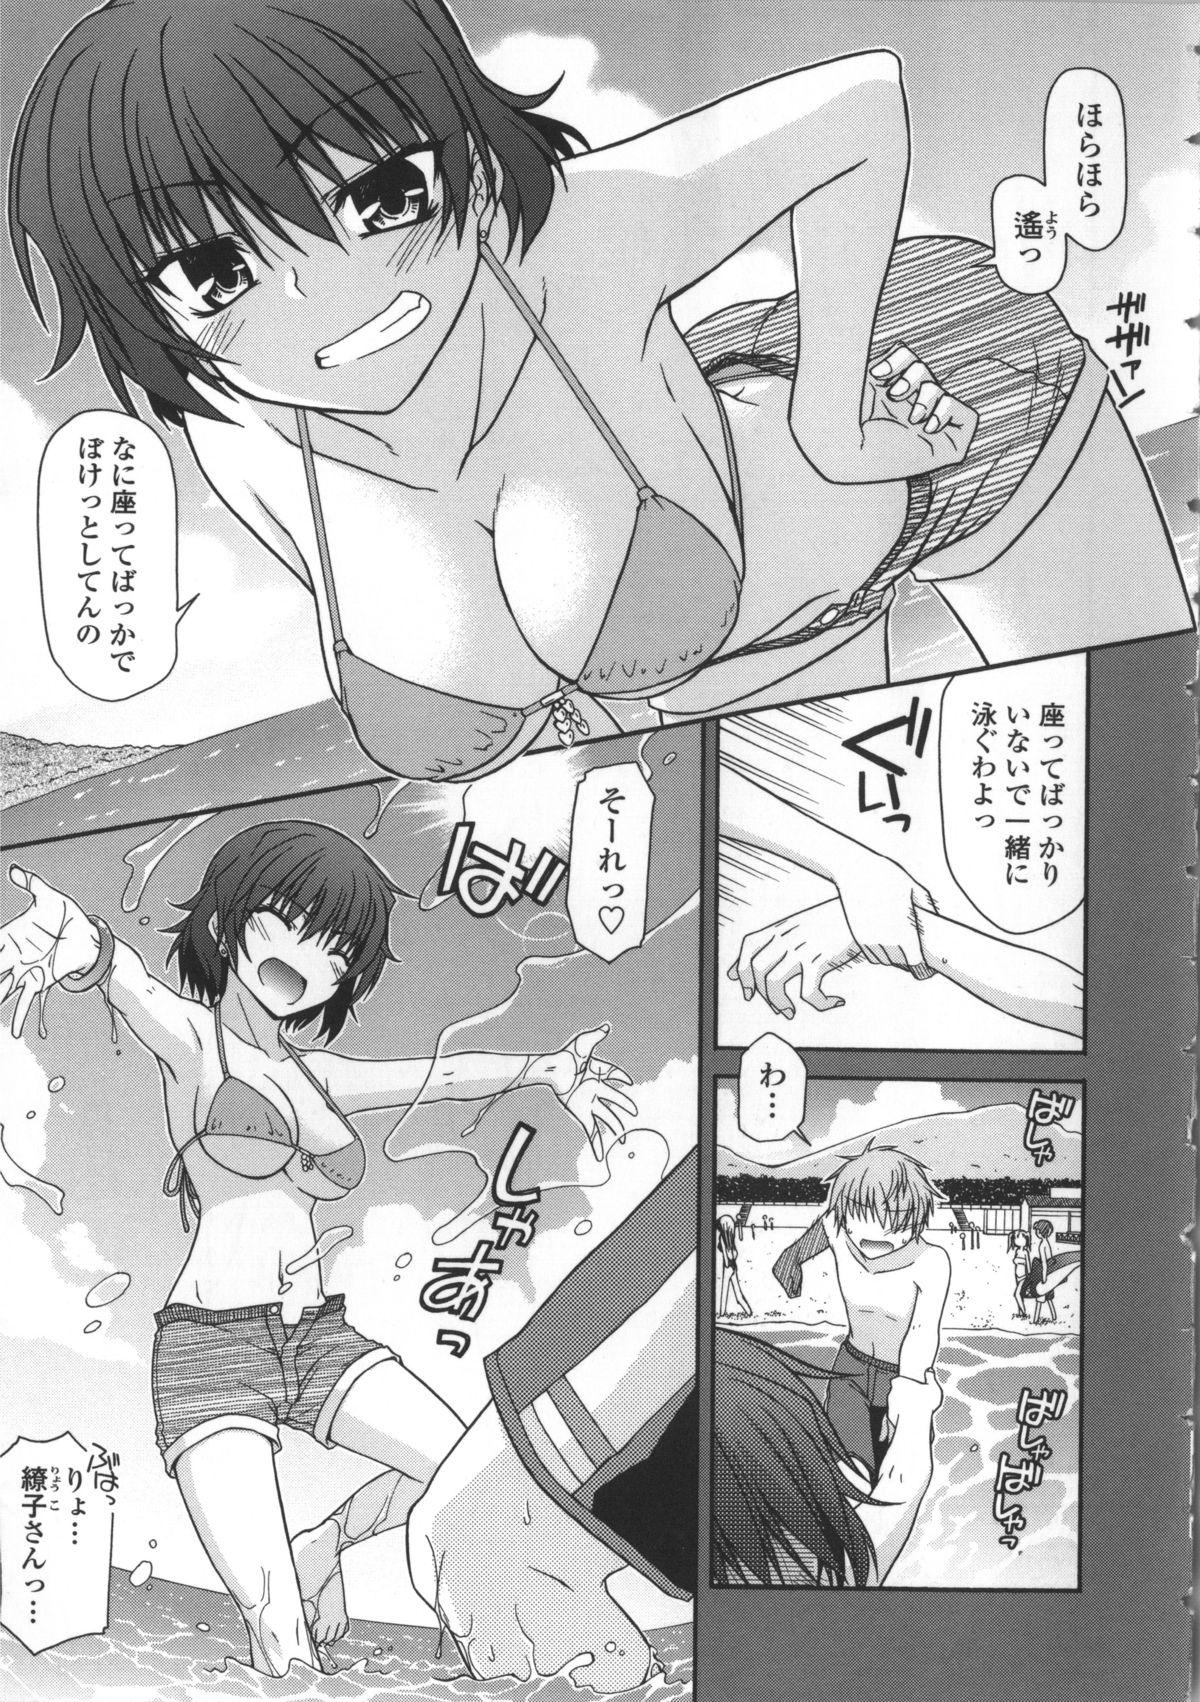 Yanks Featured Yamato Nadeshiko Breast Changes Hunks - Page 13